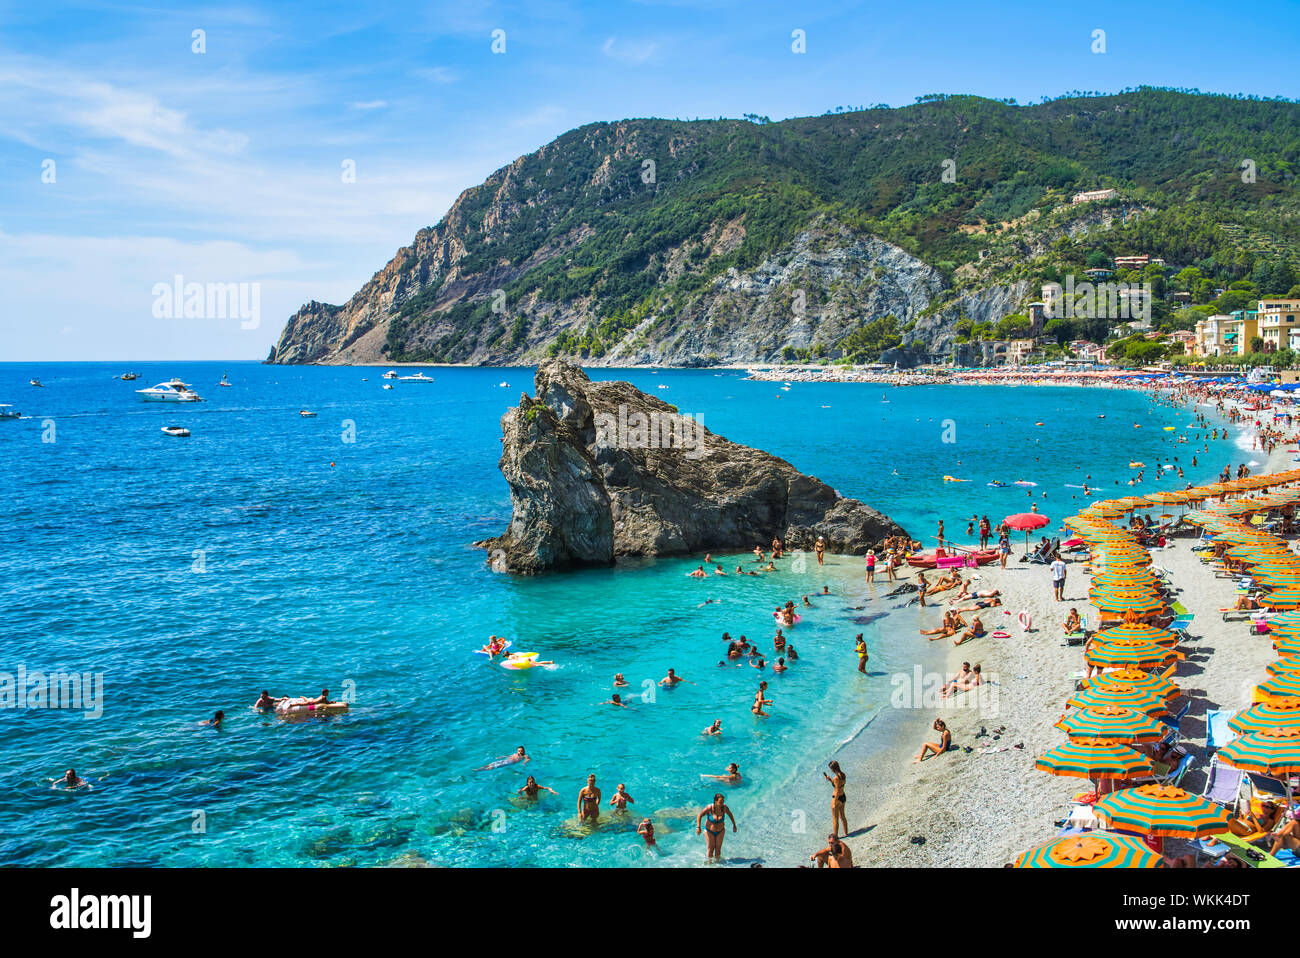 Monterosso al Mare, provincia di La Spezia, Italia - Agosto 17, 2019: linea di riva con un city beach / Liguria grande spiaggia / Italia / Vacanze Cinque Terre Foto Stock